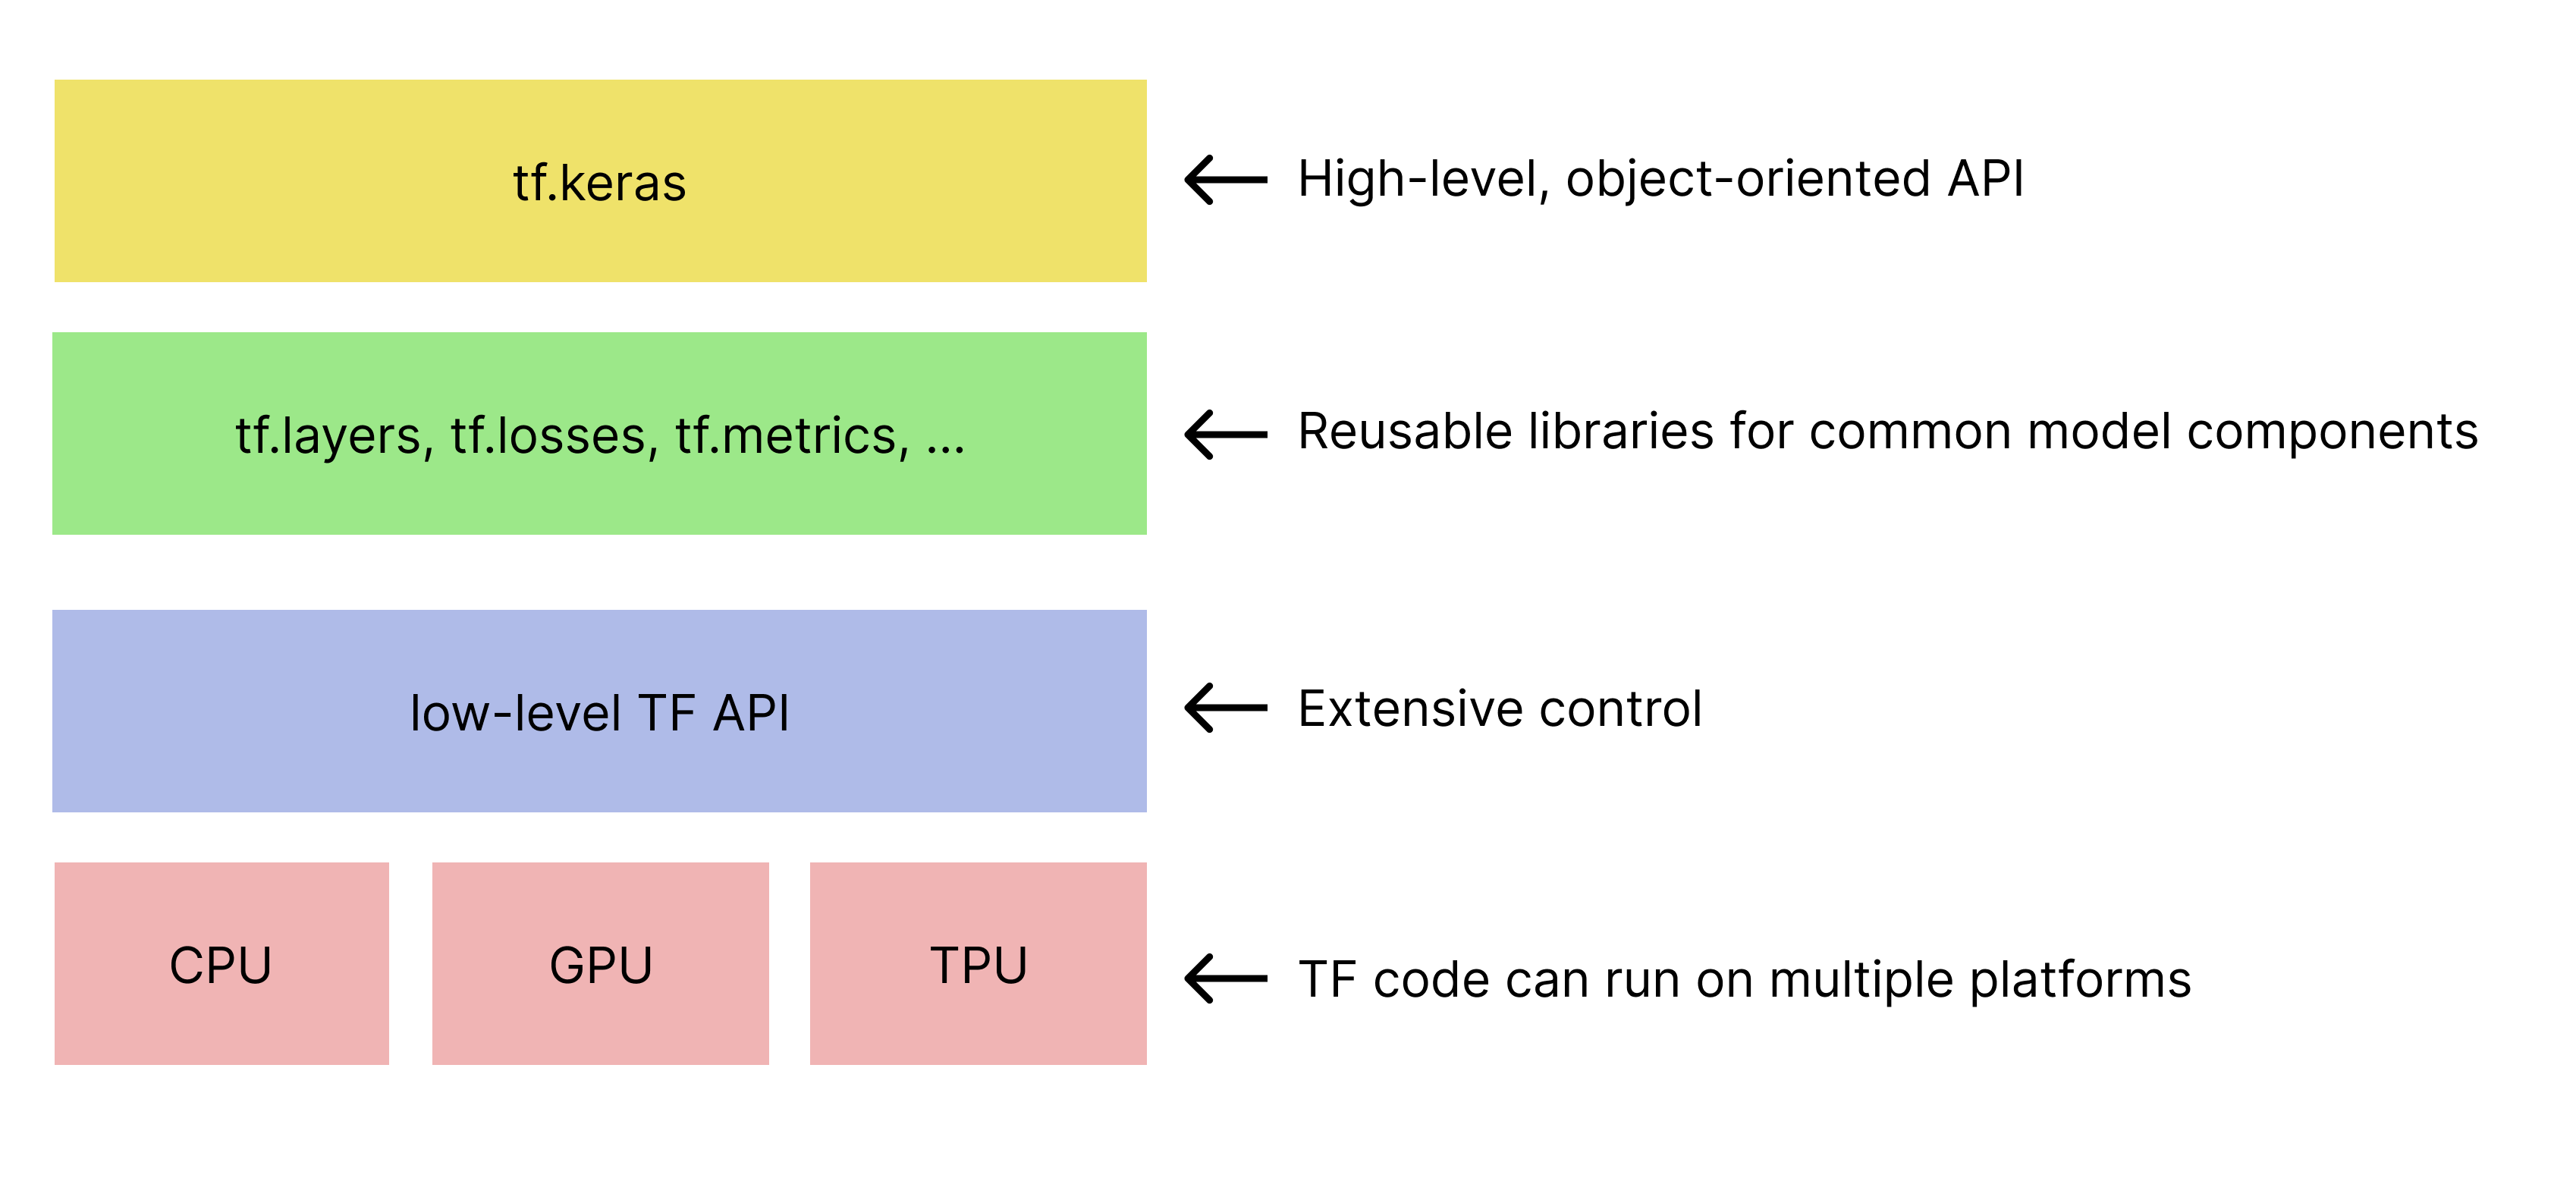 TensorFlow araç setlerinin basitleştirilmiş hiyerarşisi. 
   tf.keras API en üstte yer alır.